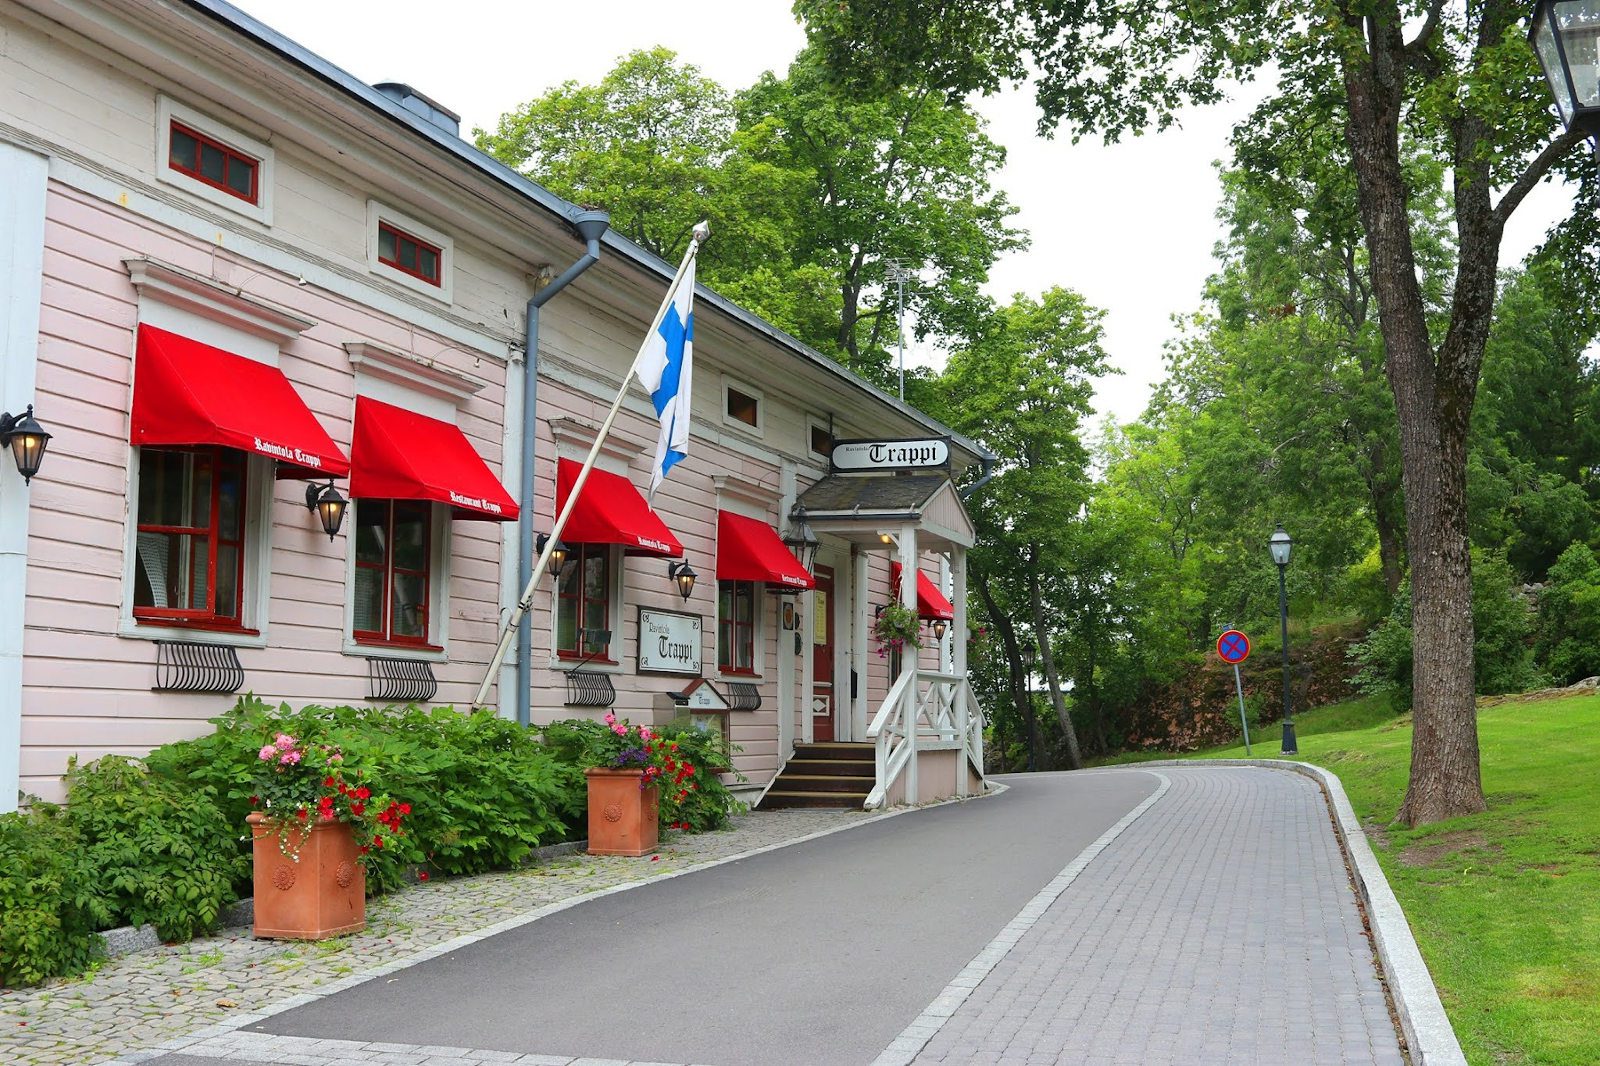 Vaaleanpunainen ravintolarakennus ja kivetty katu puiston varrella. Suomenlippu talon kyljessä, ikkunoissa punaiset markiisit, joissa lukee Ravintola Trappi.